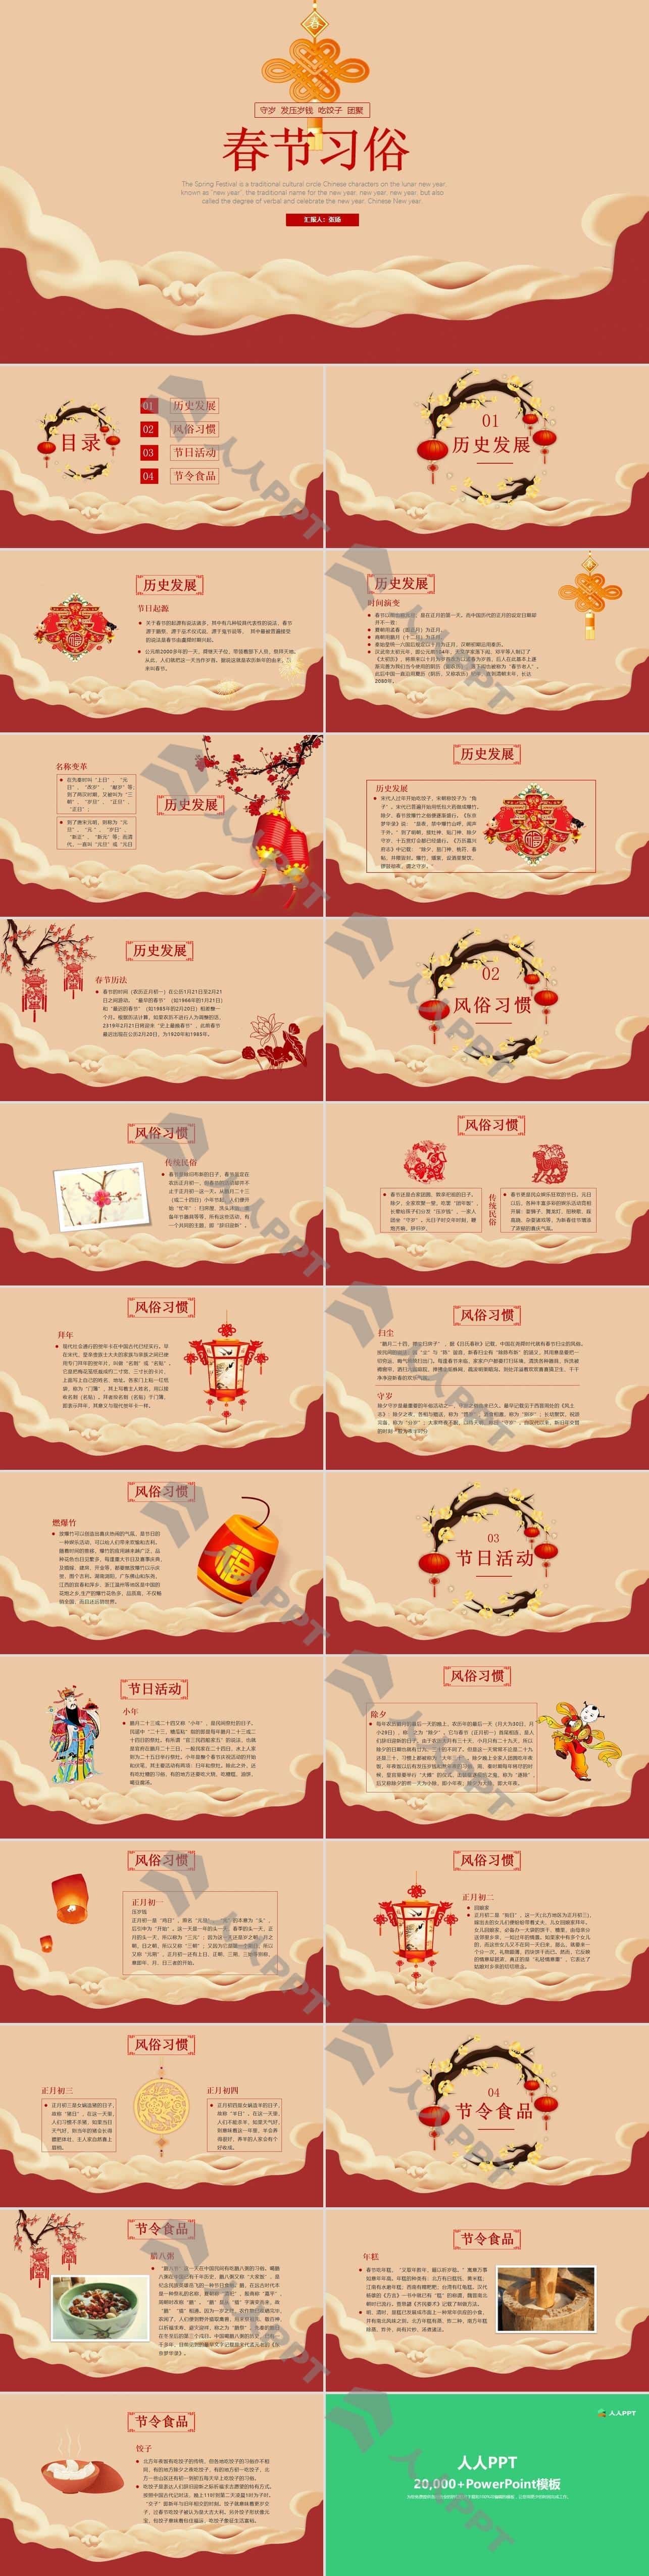 春节习俗 活动 美食――春节传统习俗介绍PPT模板长图